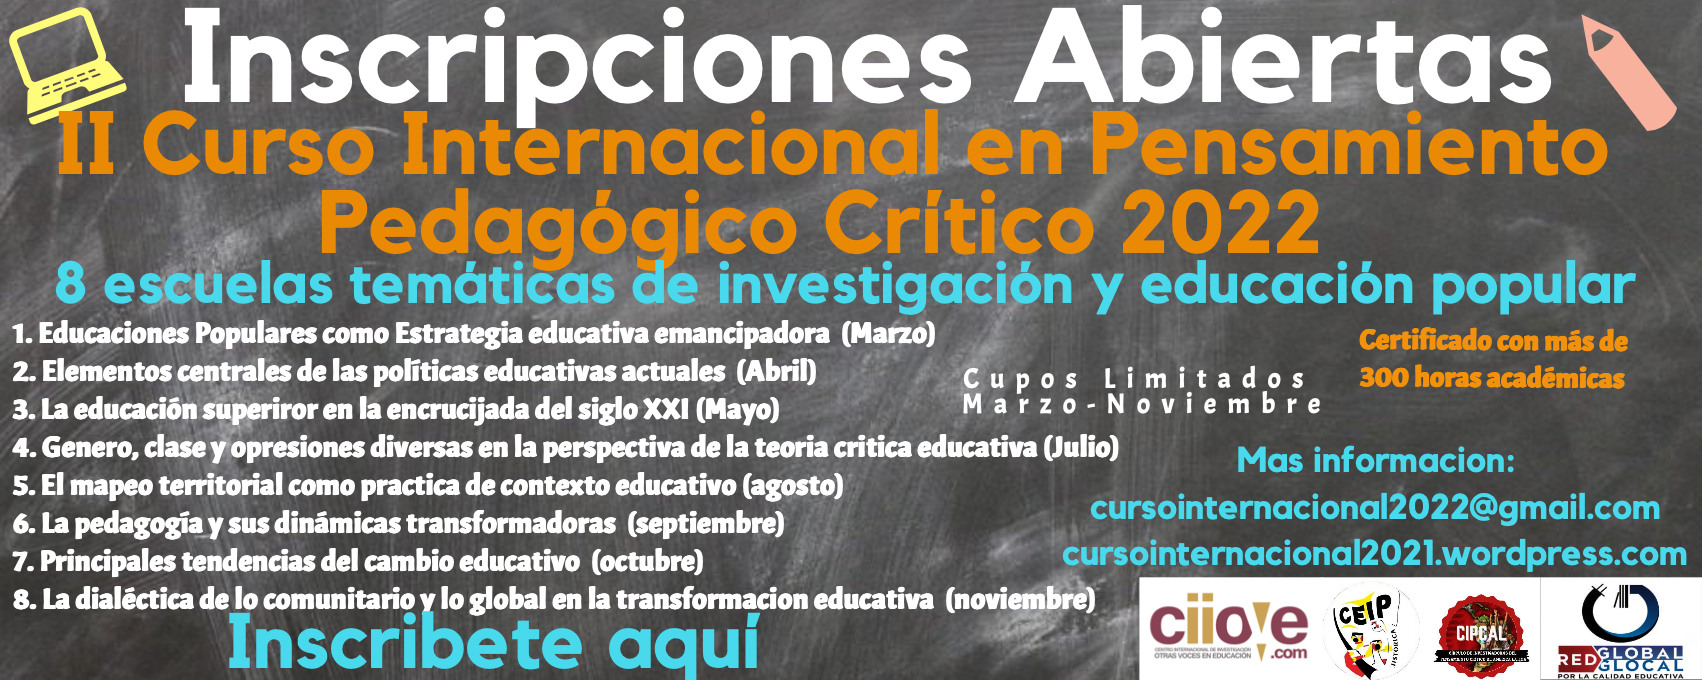 II Curso Internacional de Pensamiento Pedagógico Crítico